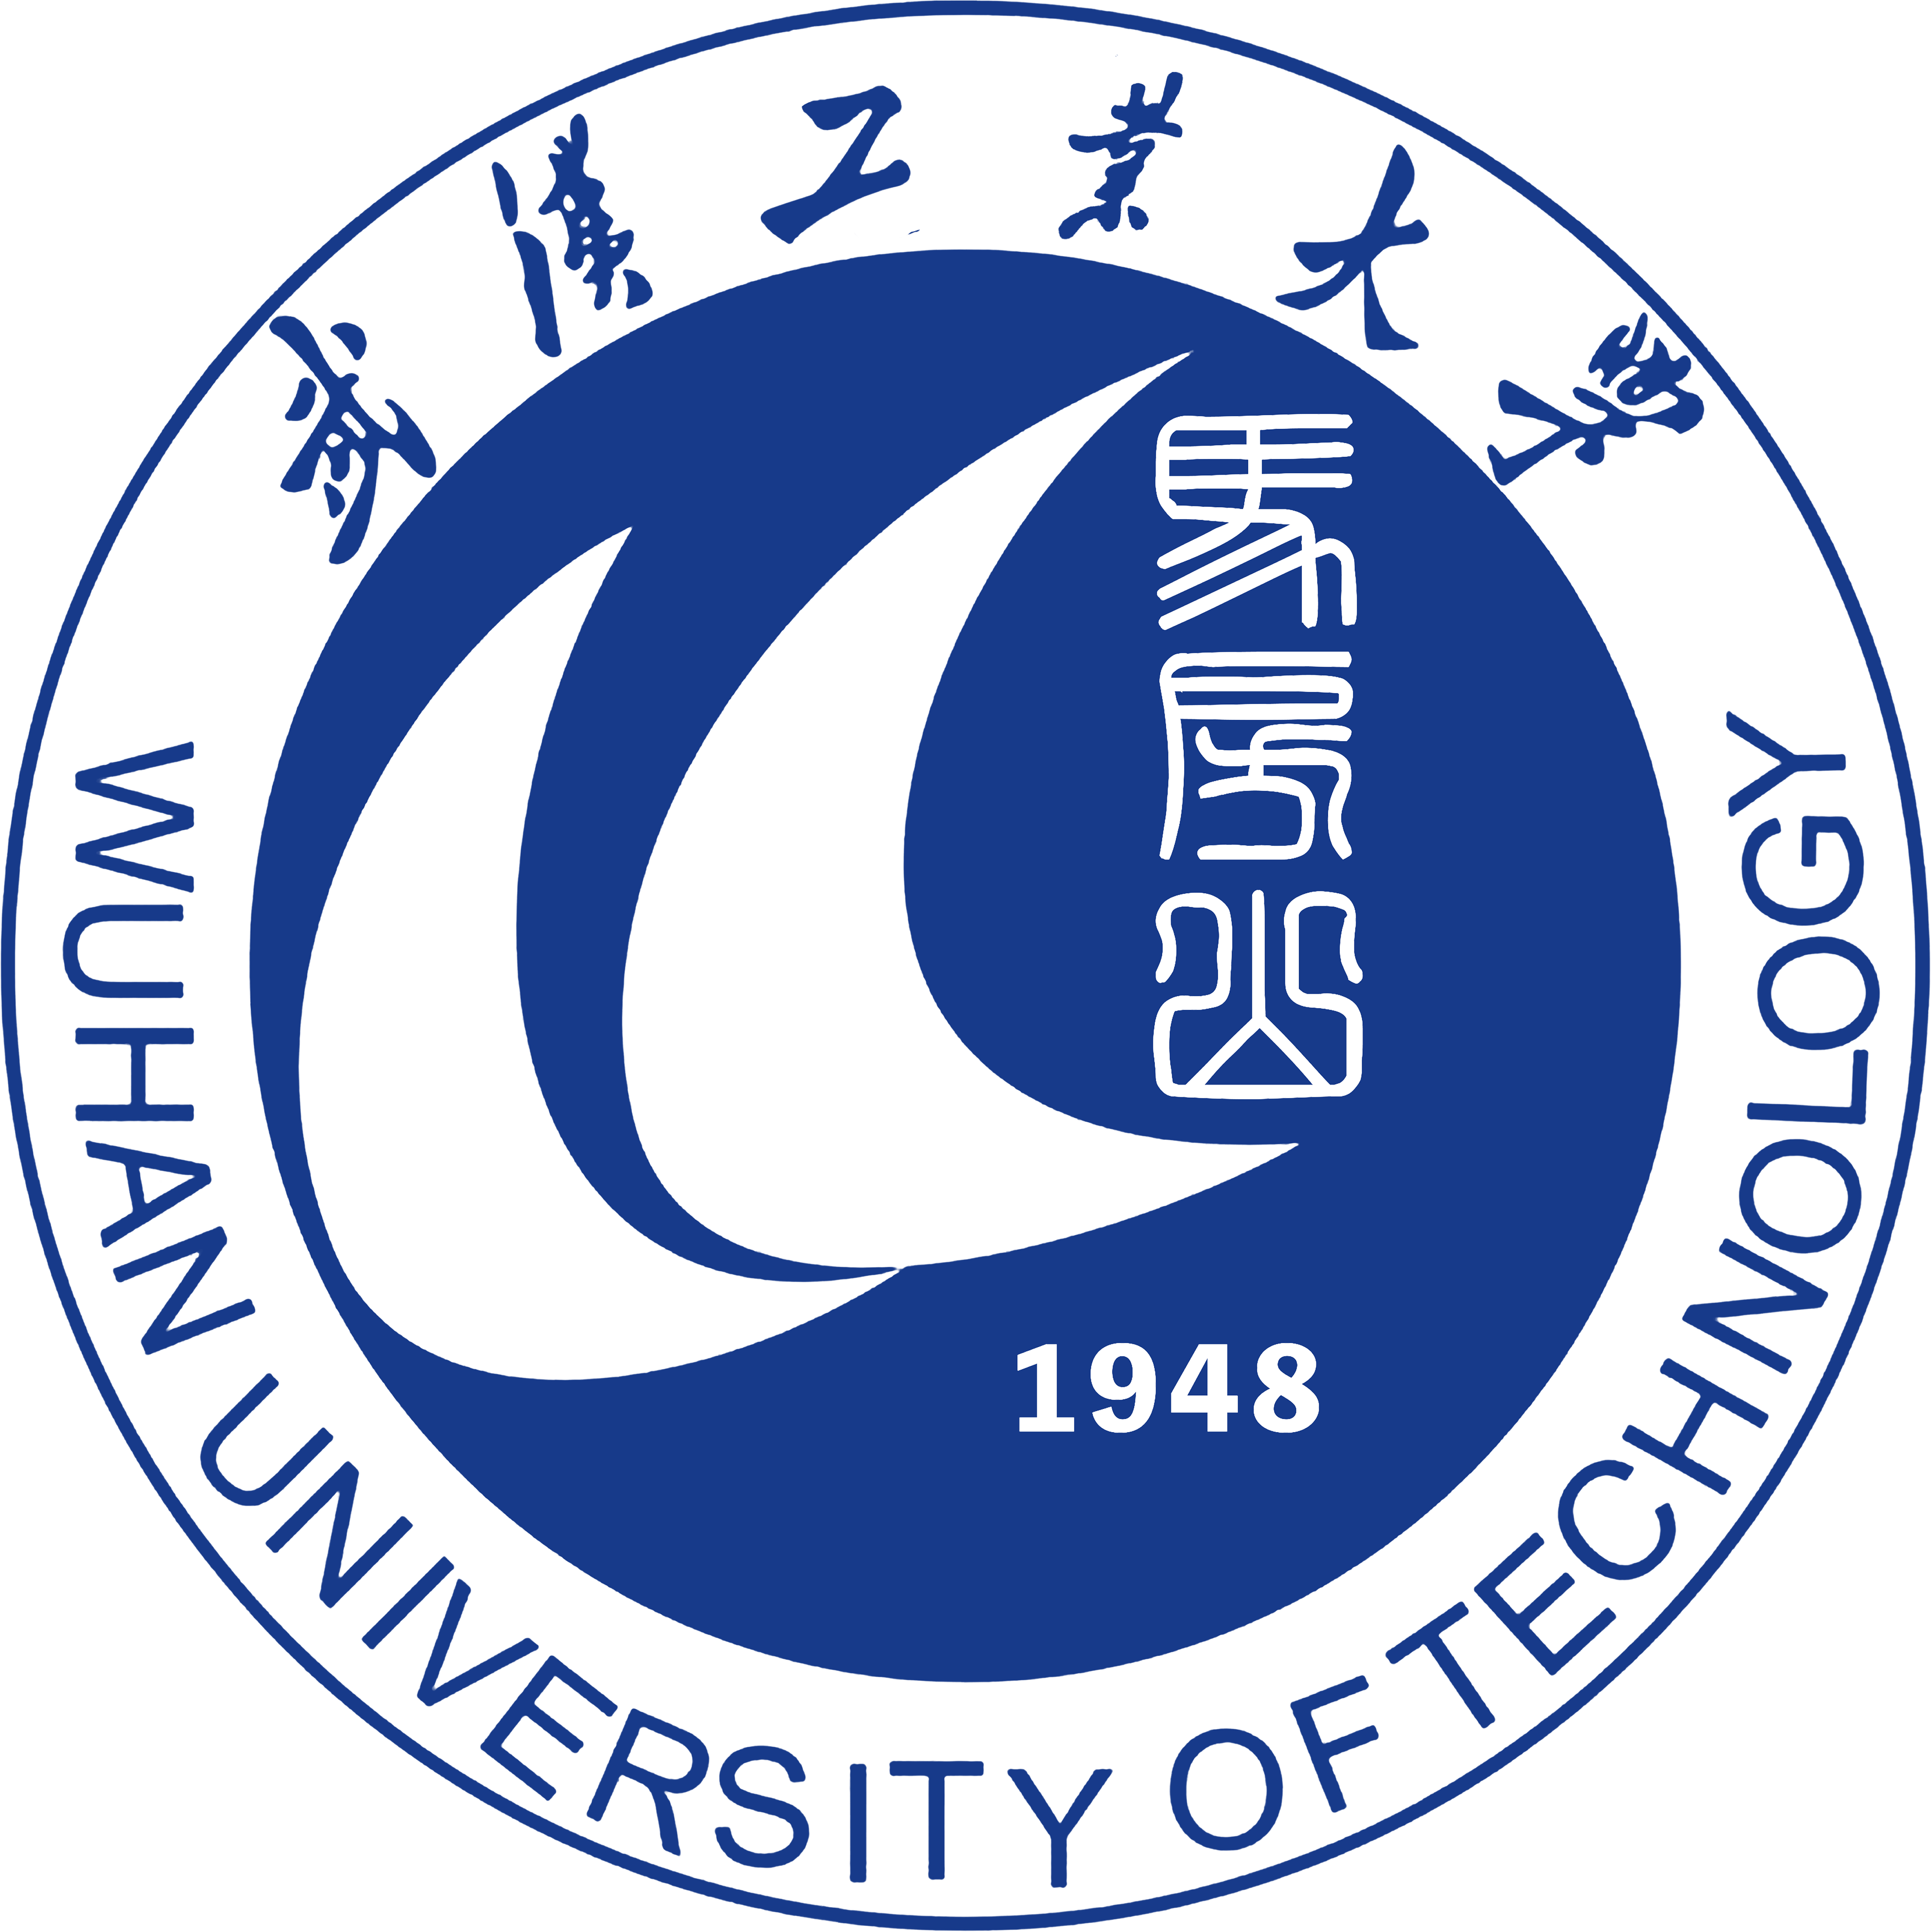 武汉理工大学校徽含义图片